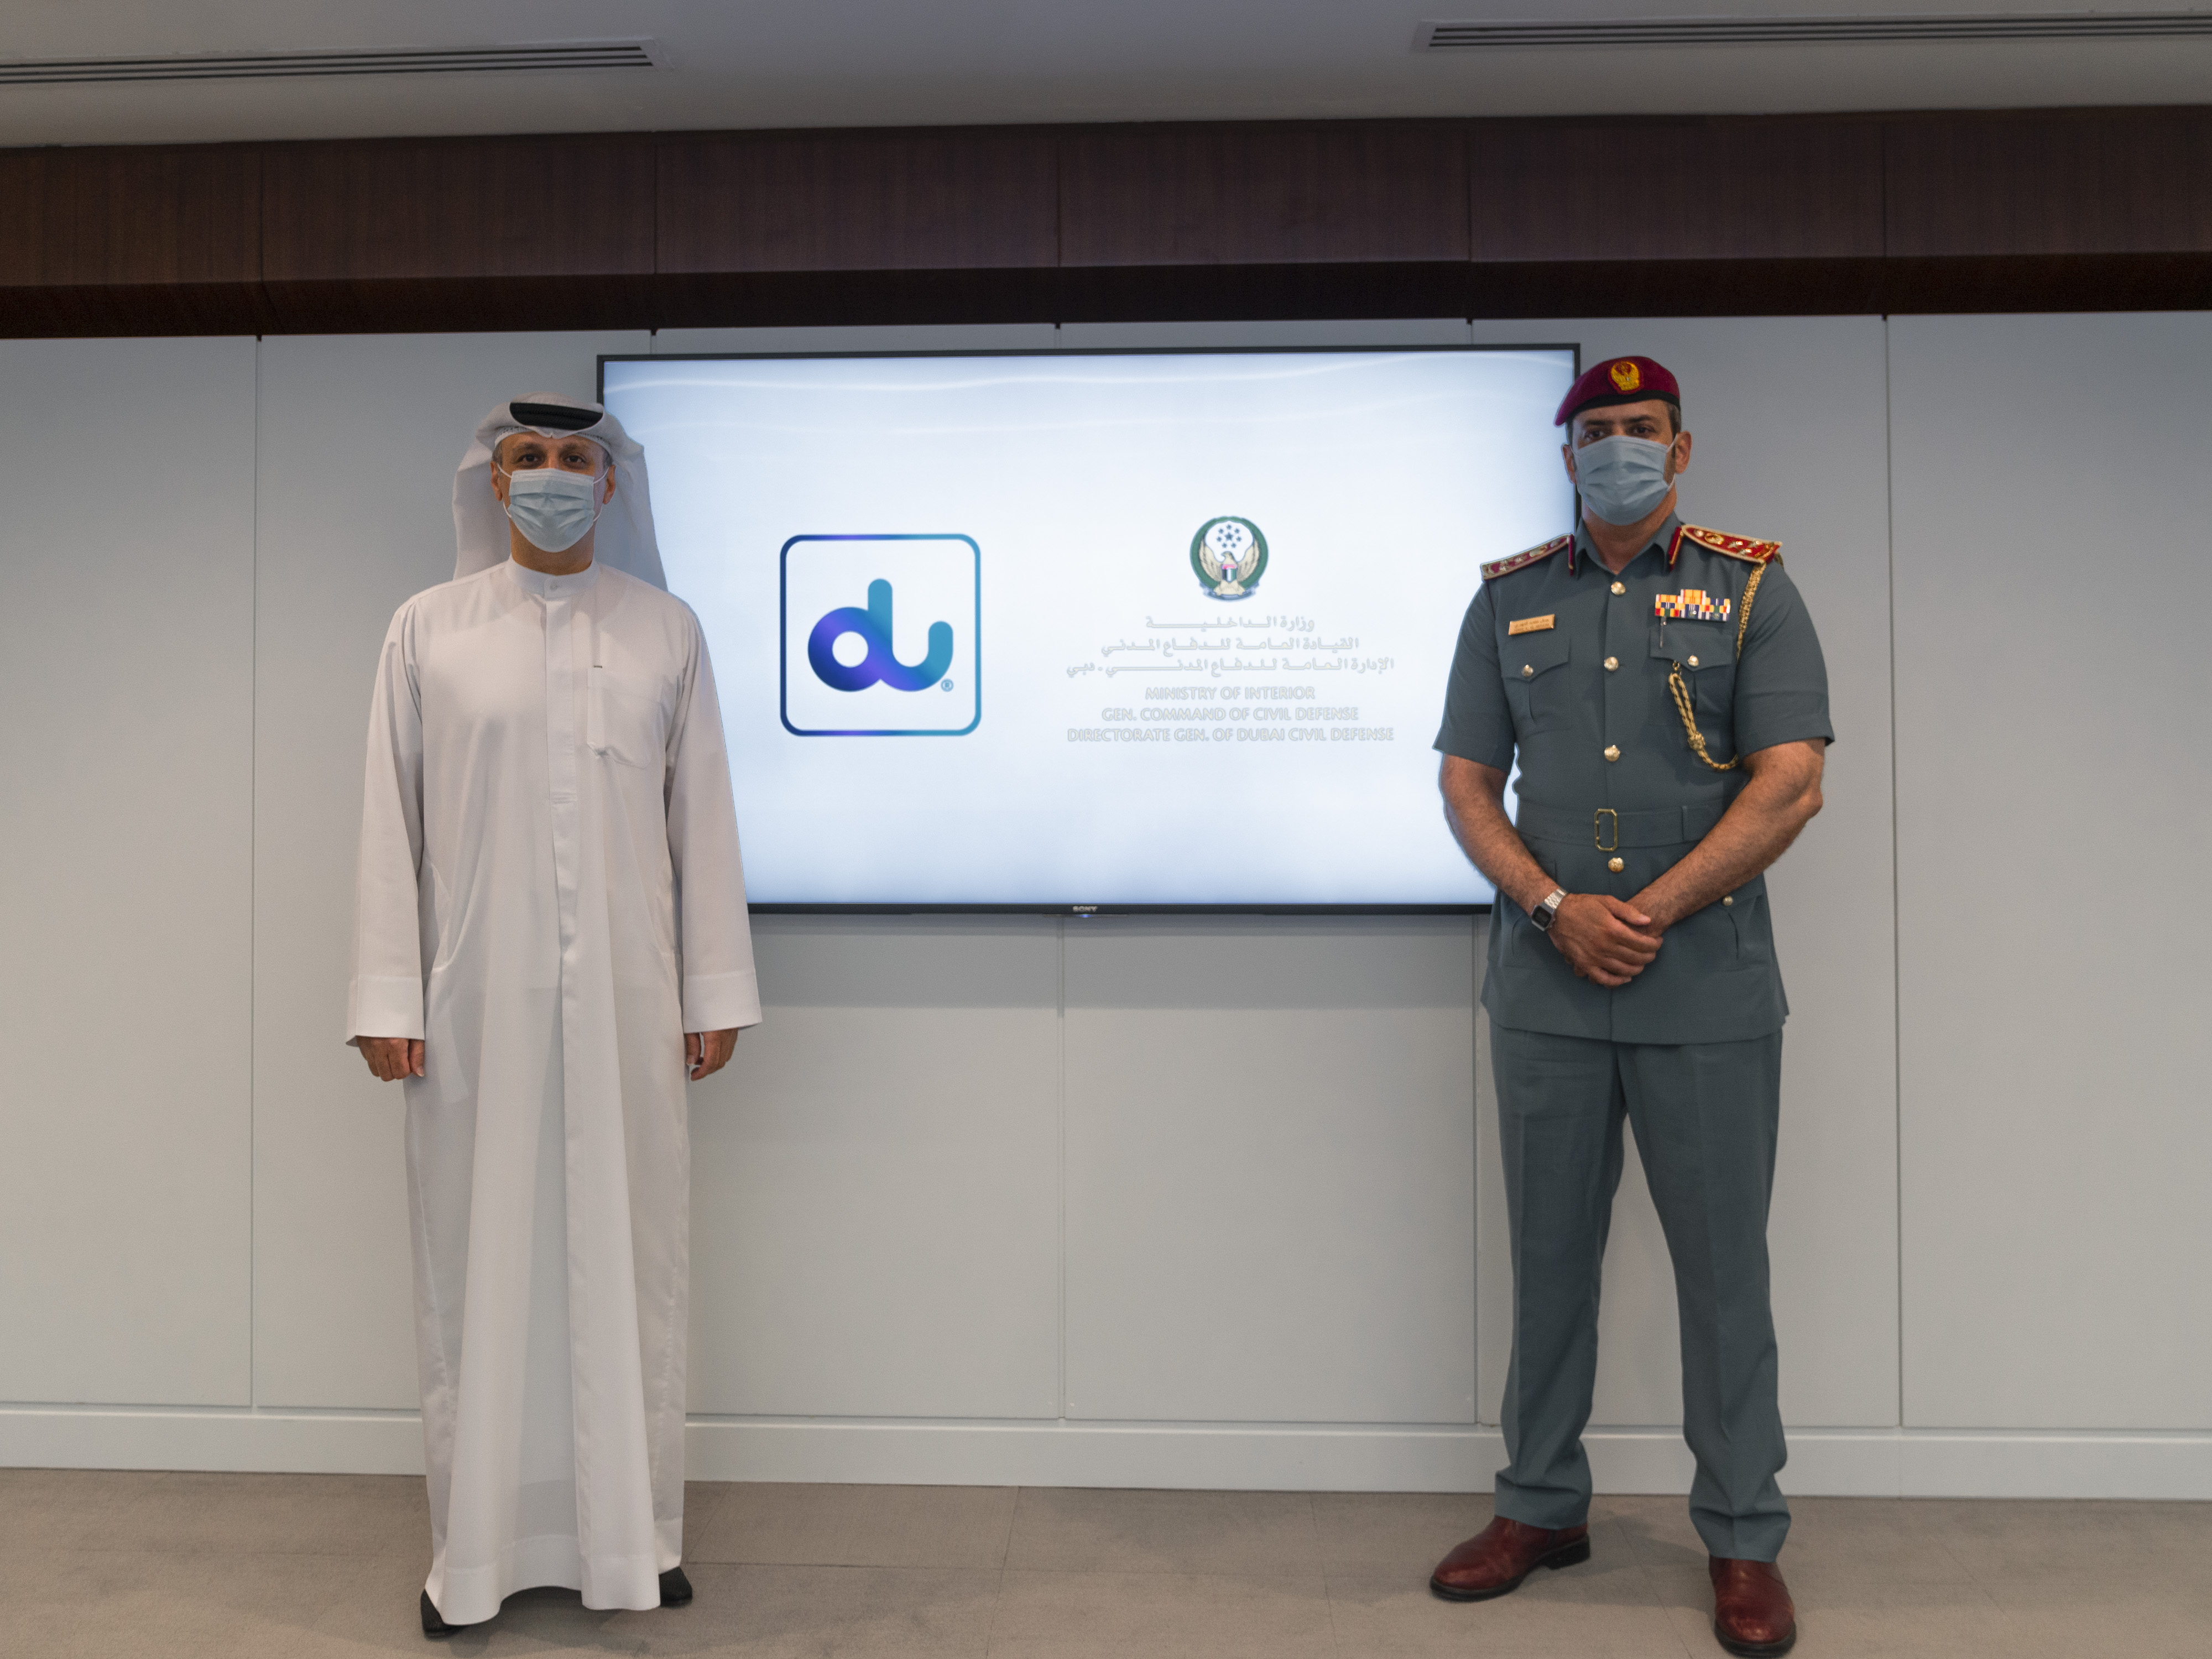 الإدارة العامة للدفاع المدني في دبي تبرم شراكة استراتيجية مع دو لتصبح أول جهة عسكرية في الدولة تتبنى تقنية بلوك تشين لتسريع وتيرة تحولها الرقمي 